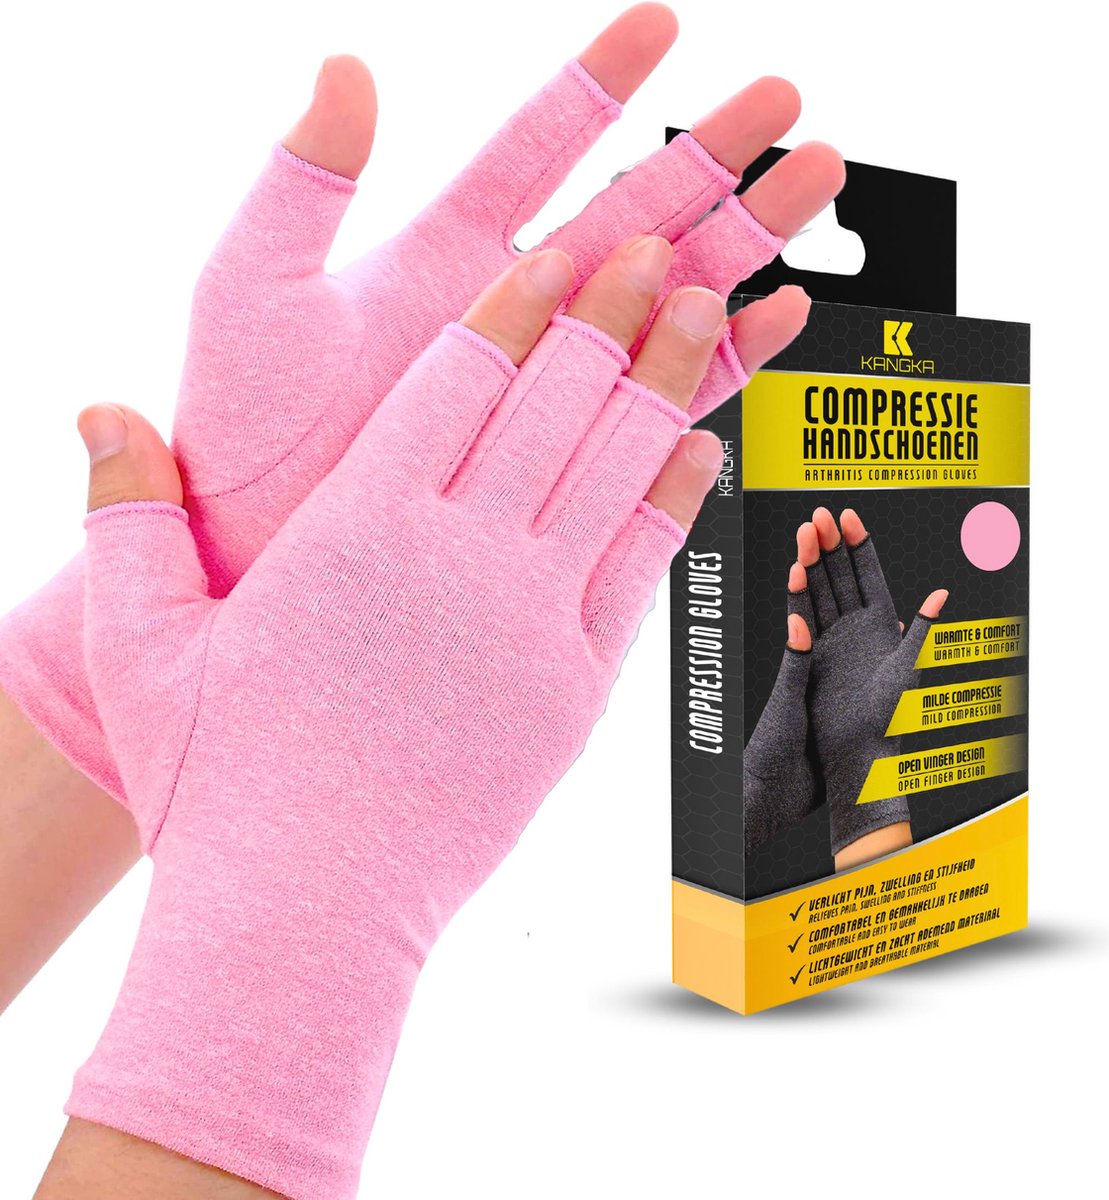 KANGKA® Reuma Compressie Handschoenen - Open vingertoppen voor Bewegingsvrijheid - Verlichting van Artritis en Reumatische Pijn - Maat L - Roze Kleur